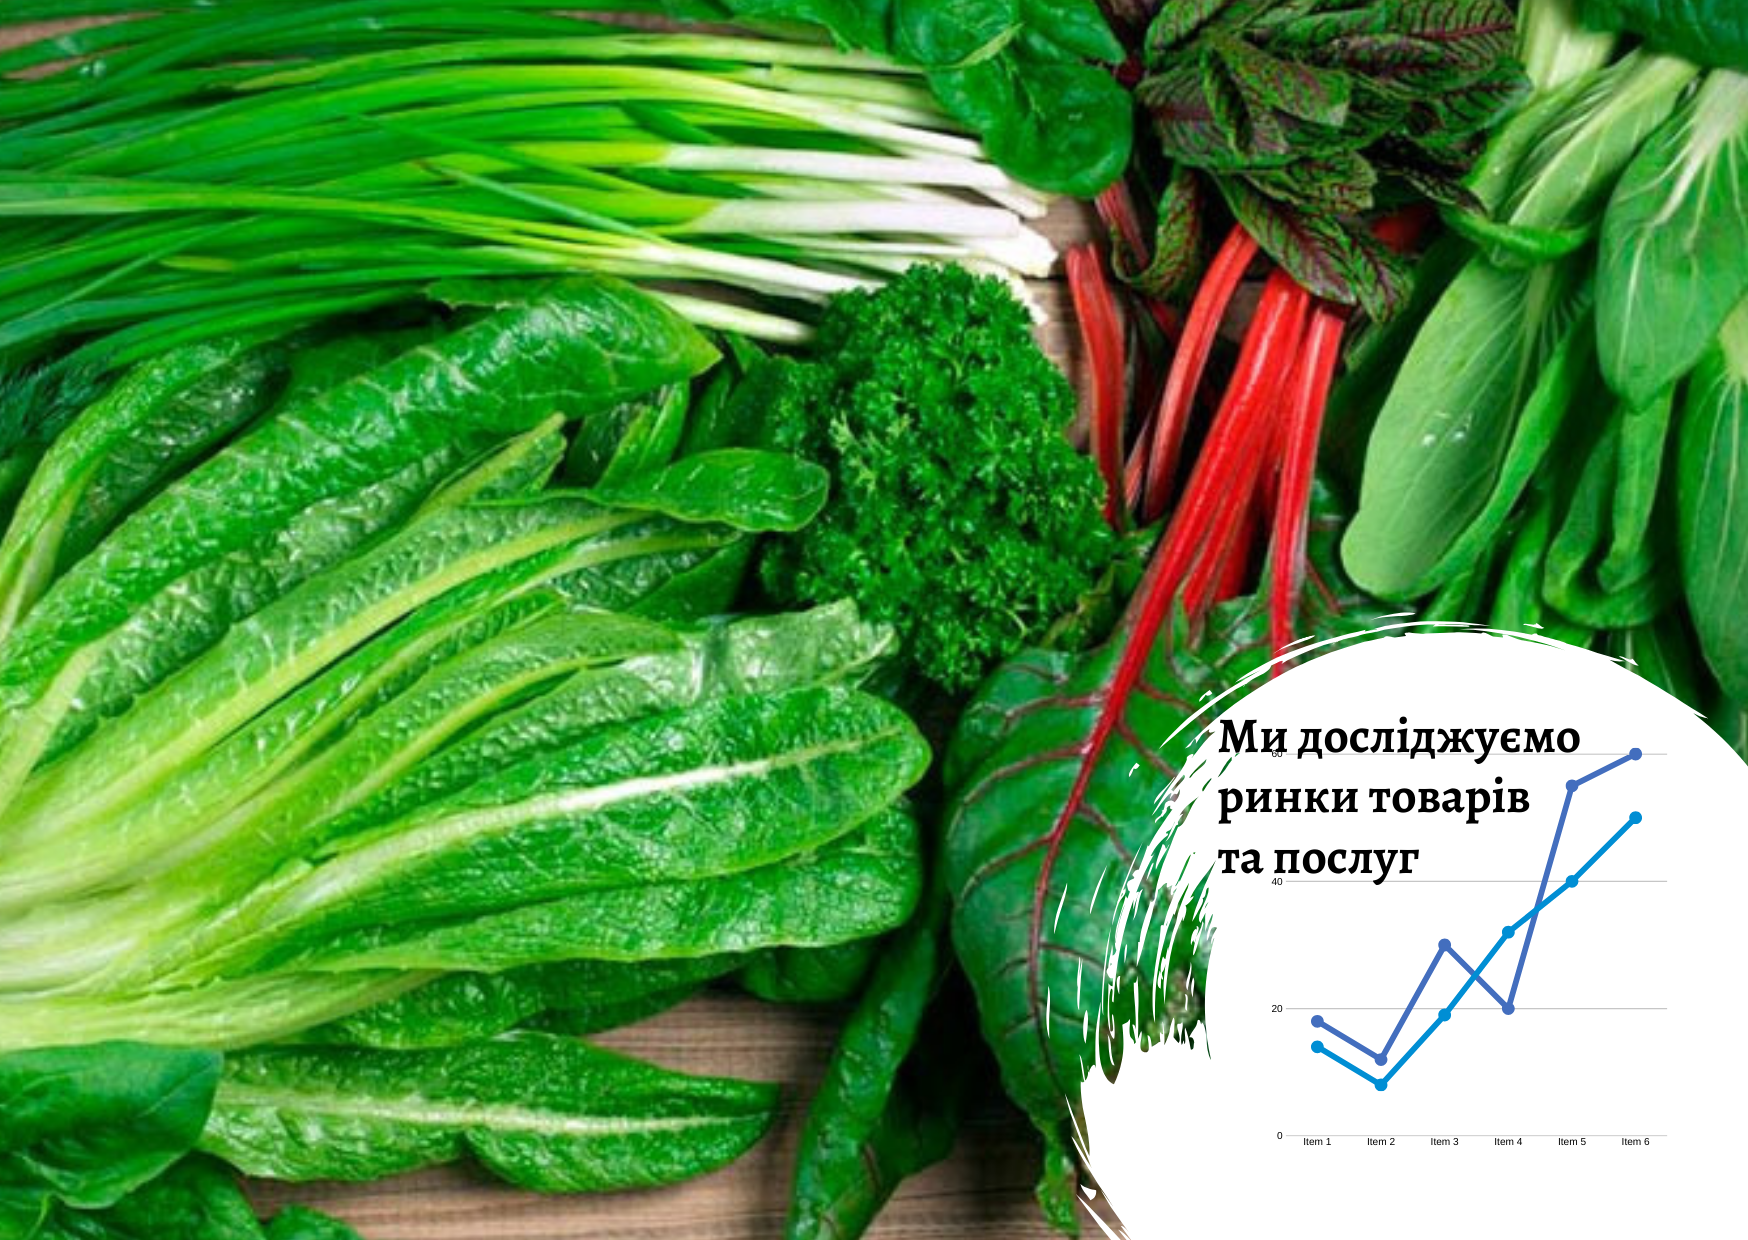 Рынок зелени в Украине: потребительские предпочтения